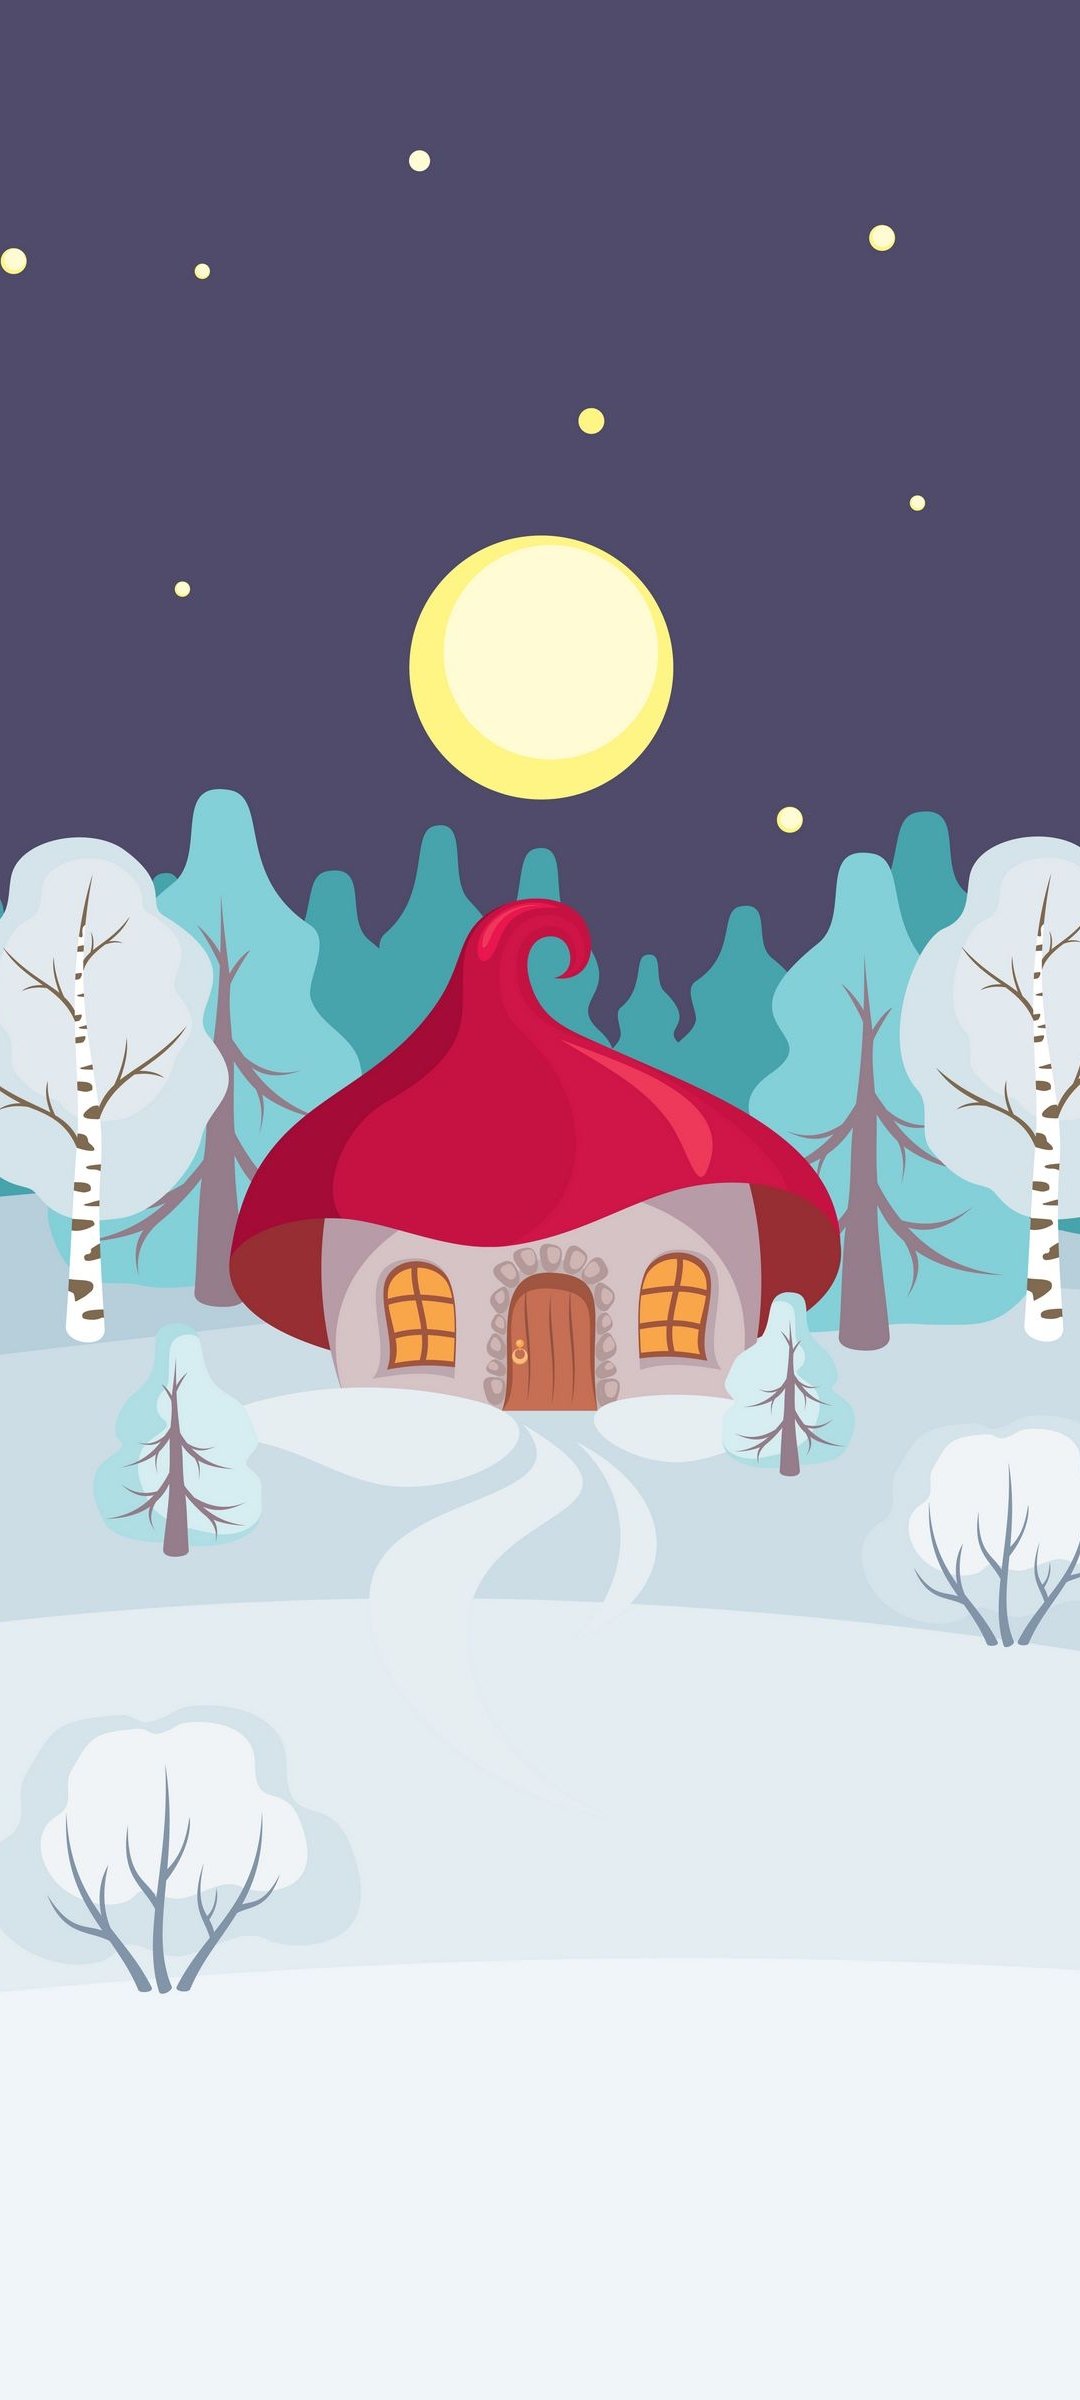 月と赤い屋根の家と雪の大地のイラスト Galaxy S21 5g 壁紙 待ち受け スマラン